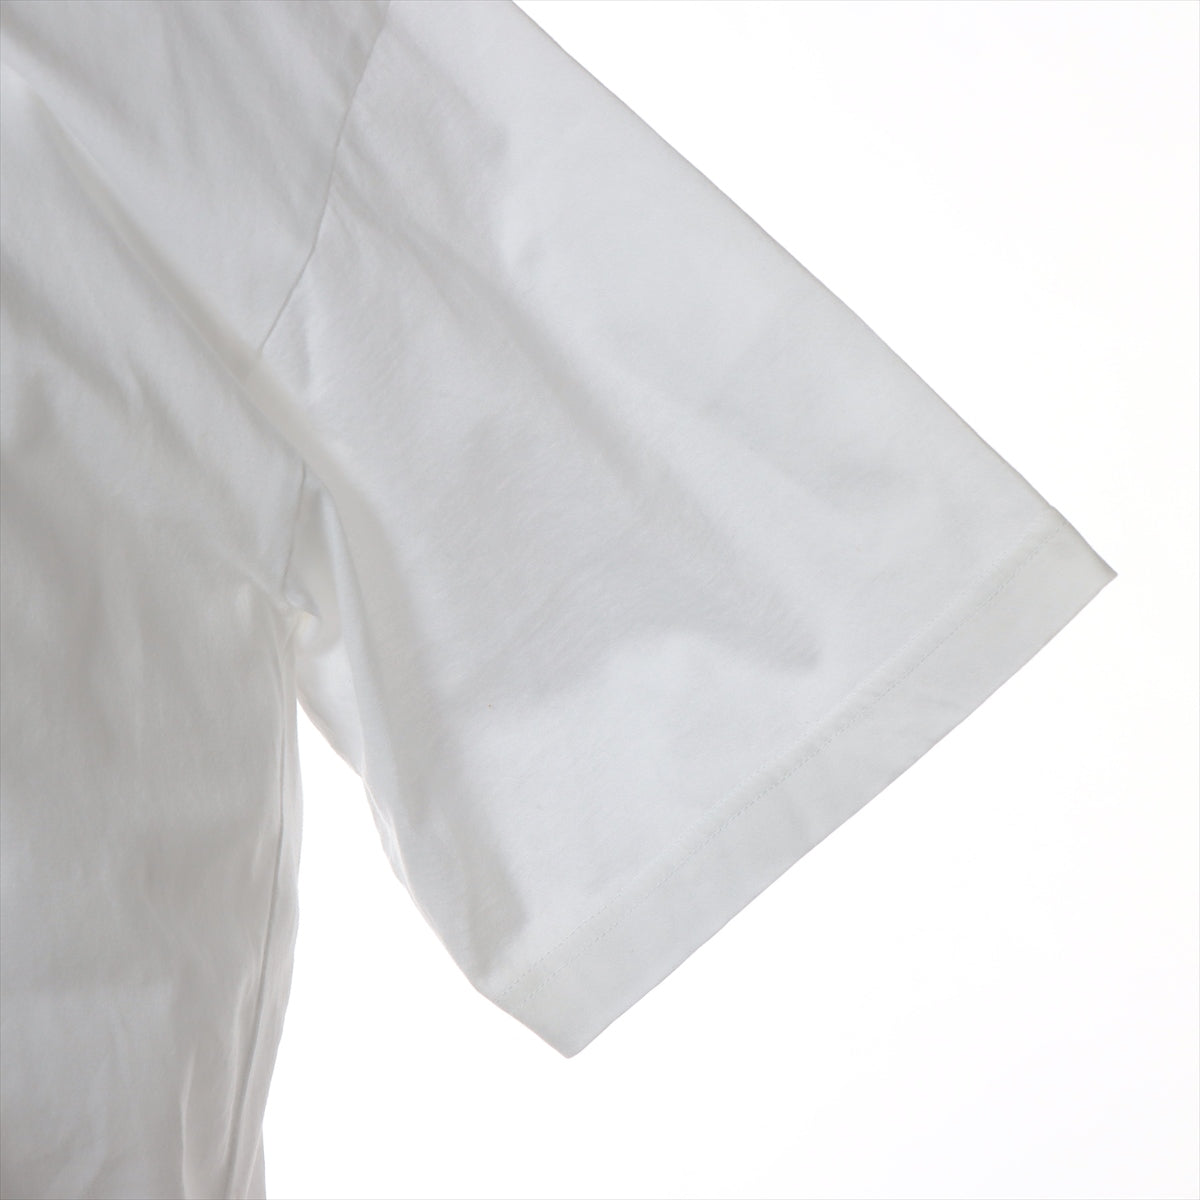 プラダ 19SS コットン Tシャツ L メンズ ホワイト  UJN566 ラバートライアングル